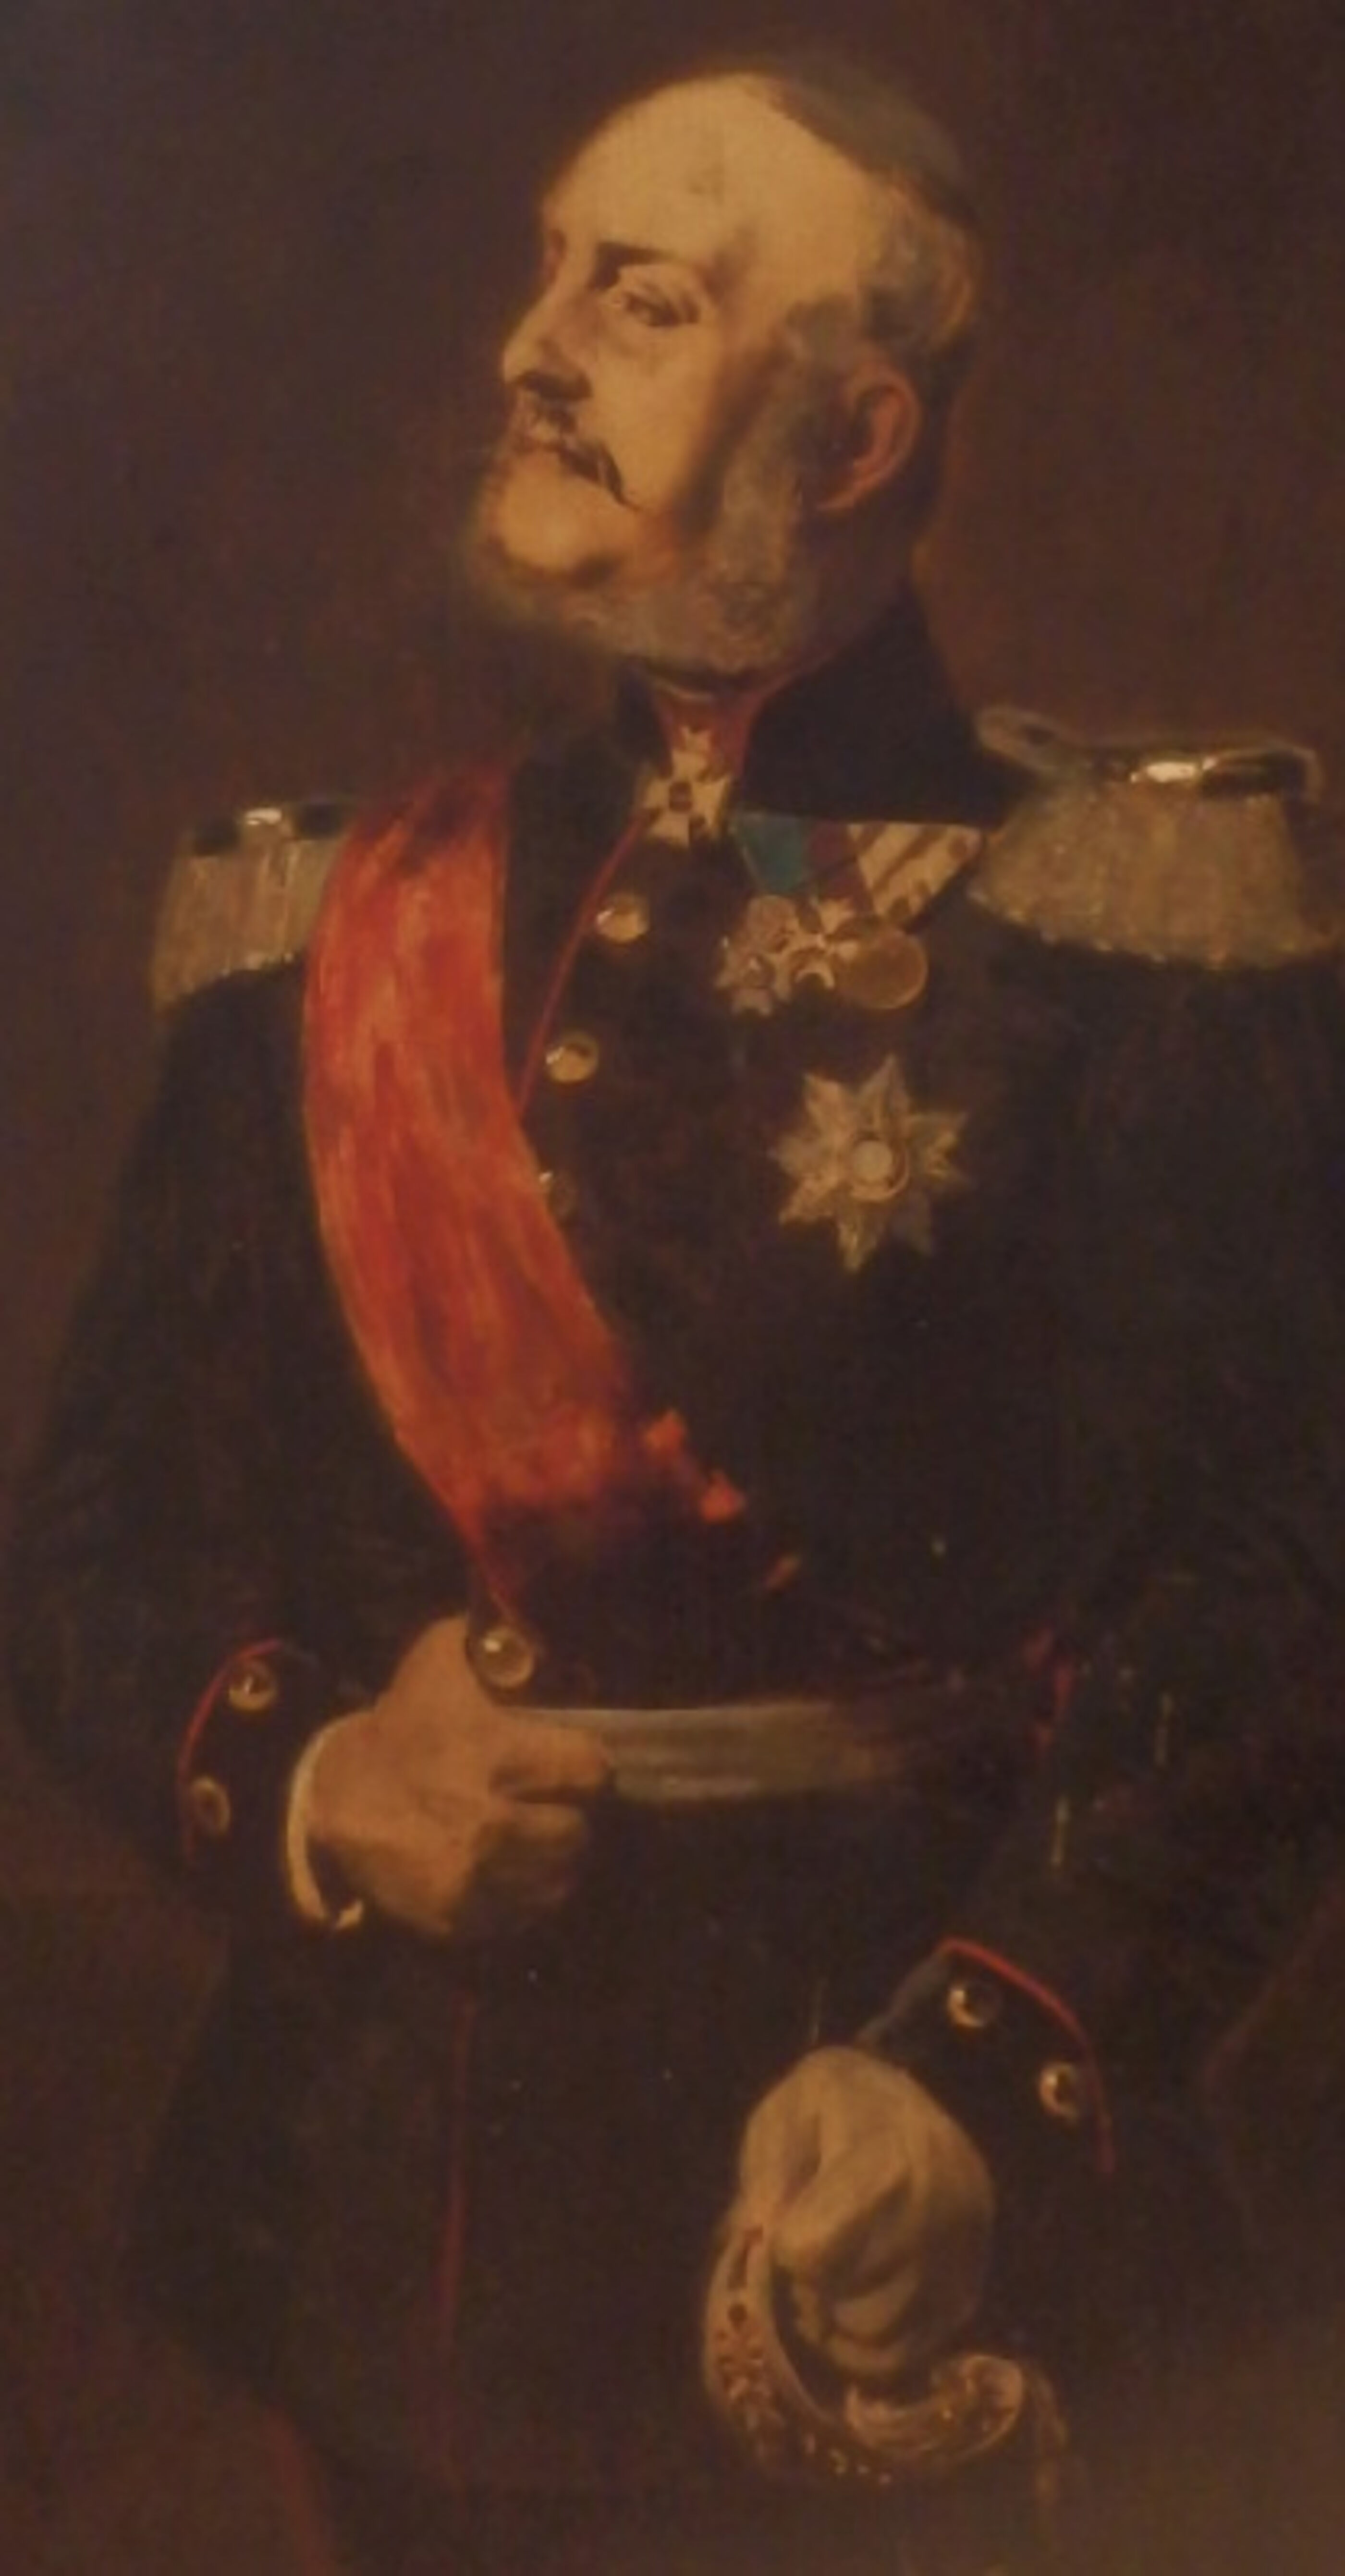 Das Bild zeigt ein Ölgemälde von König Georg V., eine männlich lesbare Person in Uniform mit kurzen grauen Haaren, einem Schnurbart, mit Schärpe und Orden.